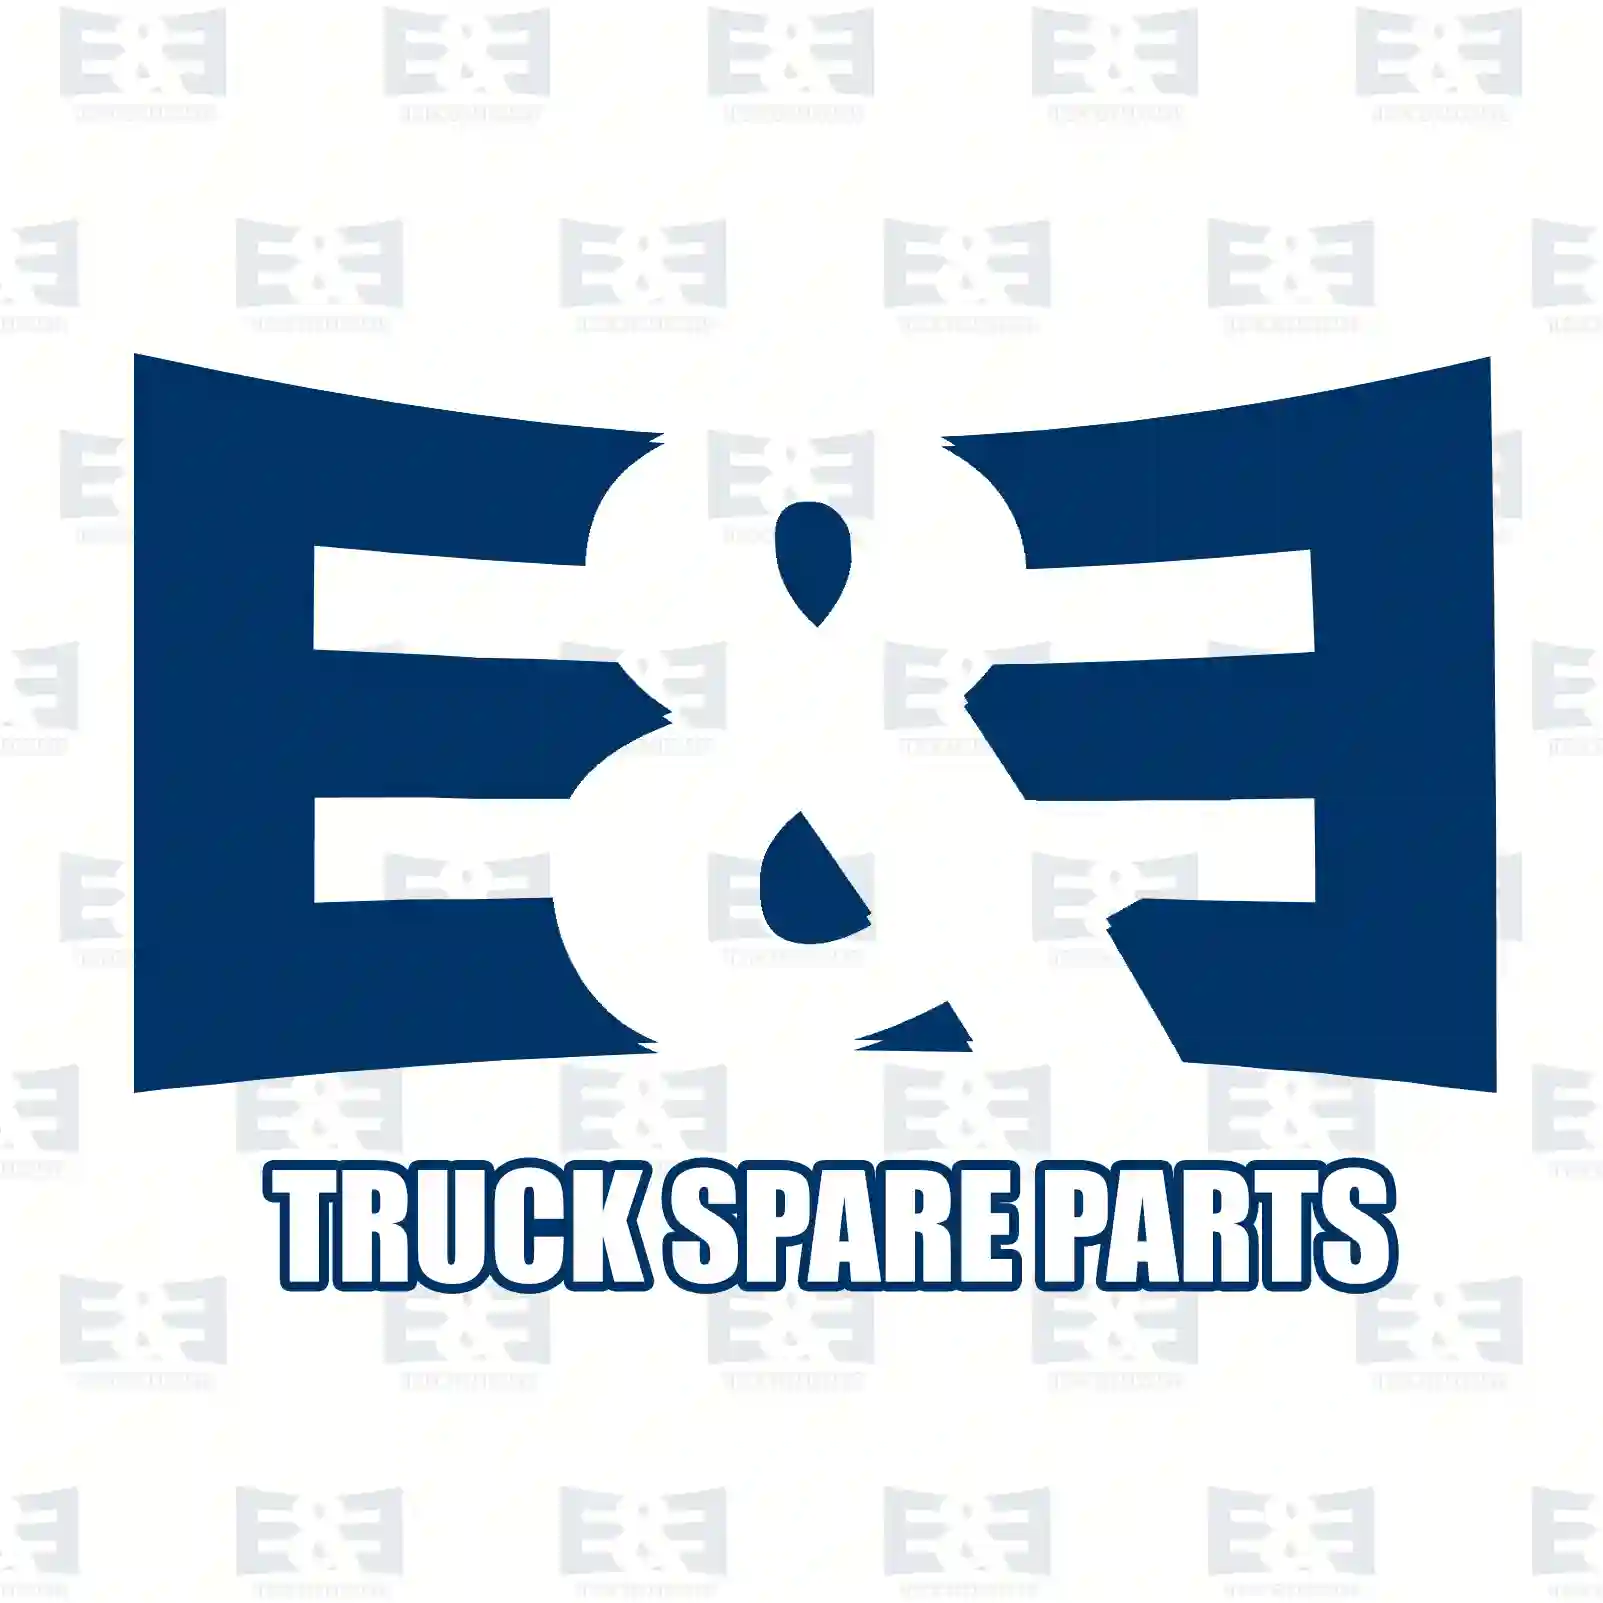 Cover, air deflector, right, 2E2289611, 1508949, 1723003, 1852928, ZG60432-0008 ||  2E2289611 E&E Truck Spare Parts | Truck Spare Parts, Auotomotive Spare Parts Cover, air deflector, right, 2E2289611, 1508949, 1723003, 1852928, ZG60432-0008 ||  2E2289611 E&E Truck Spare Parts | Truck Spare Parts, Auotomotive Spare Parts